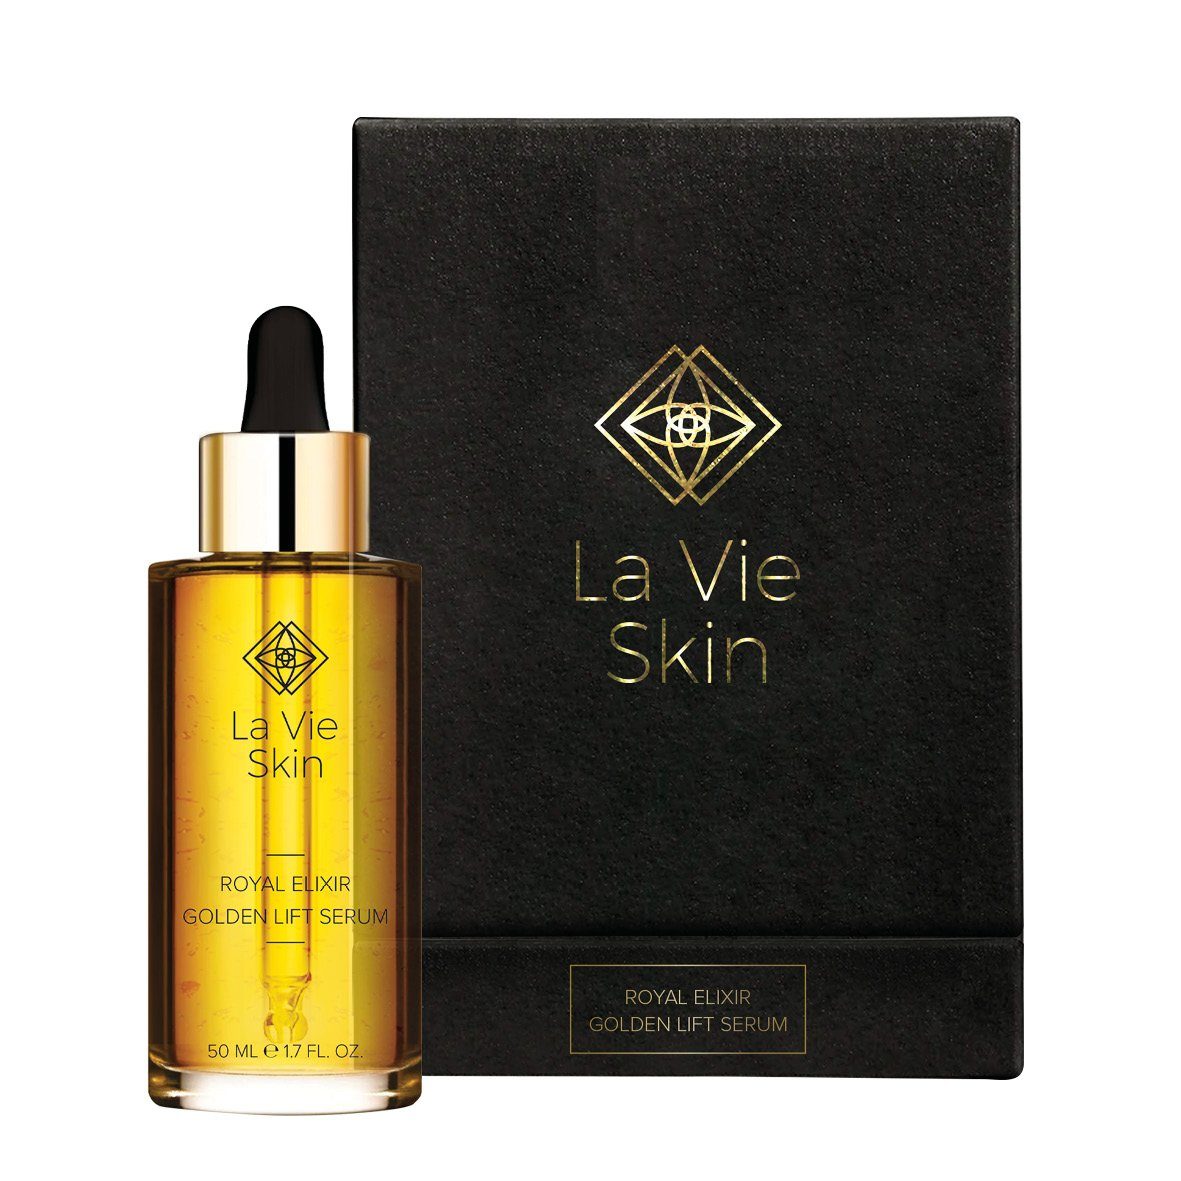 La Vie Skin Gesichtsserum Royal Elixir Golden Lift Serum, 24K Gold - Feuchtigkeitsspendend - Lipofilling - Lifting